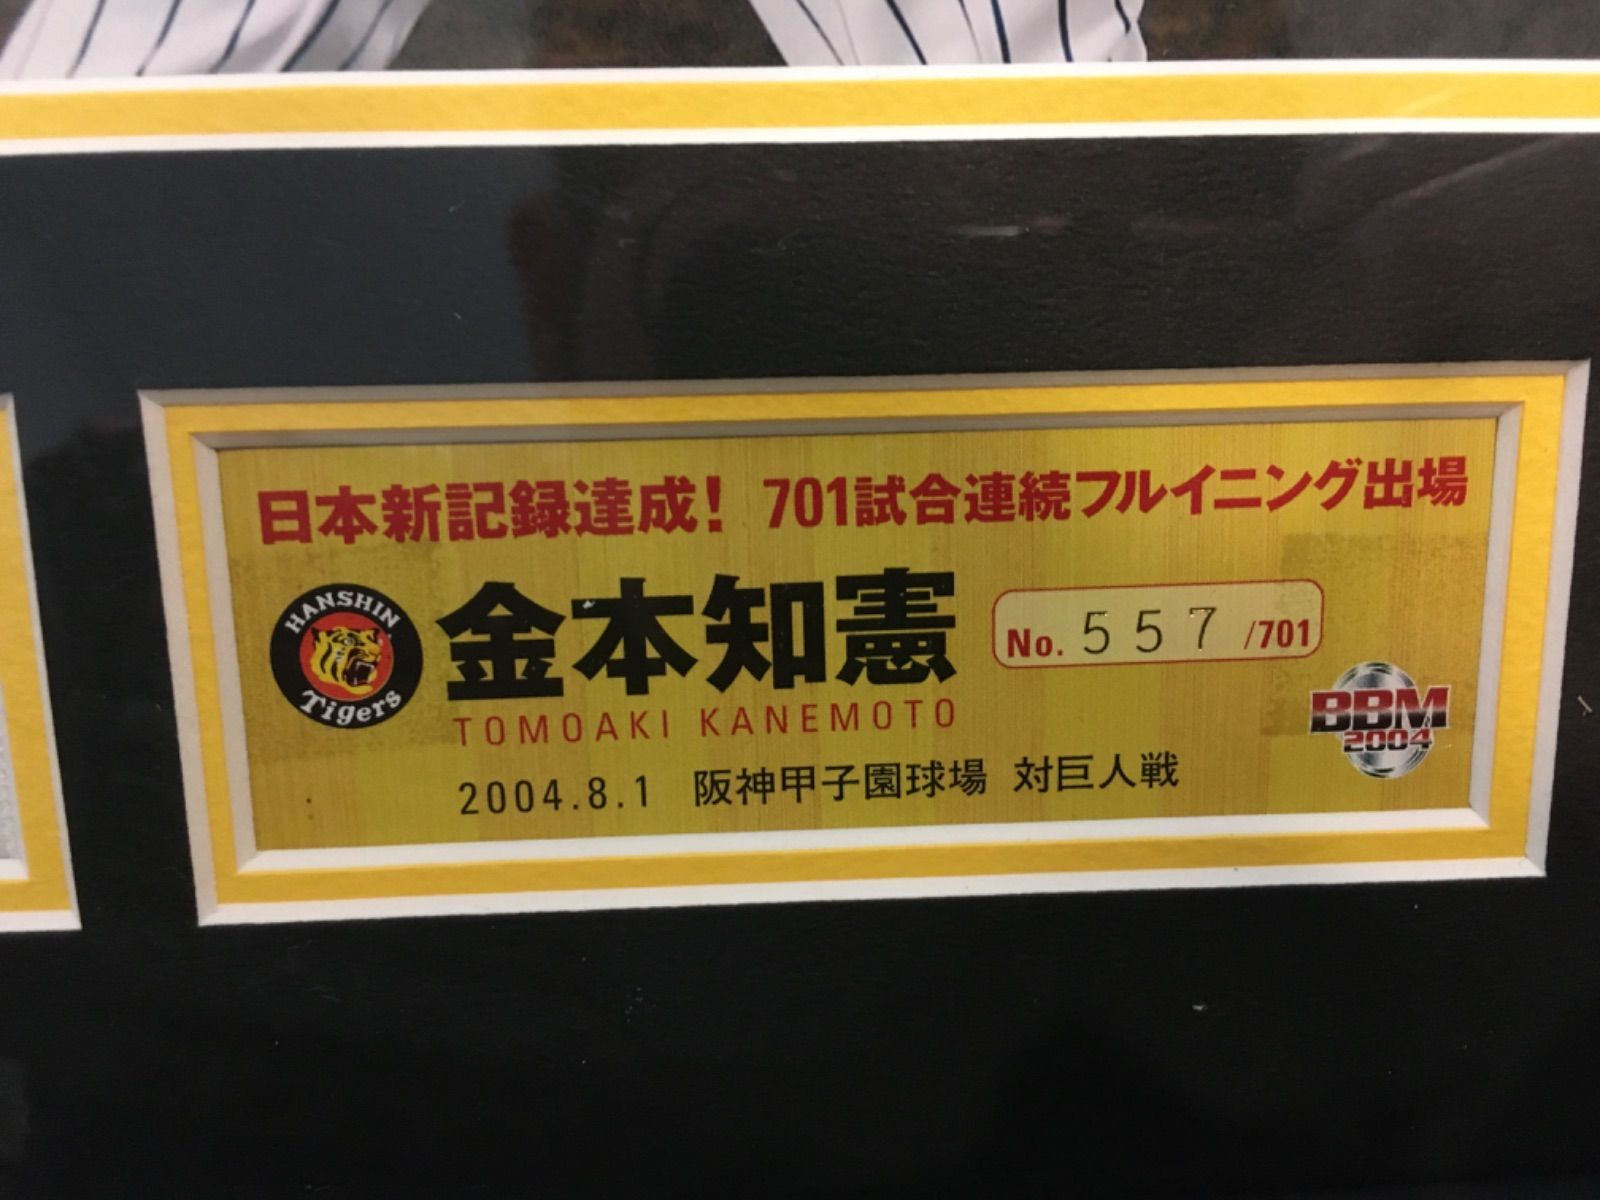 阪神タイガース 金本知憲 701試合フルイニング出場 記念パネル-